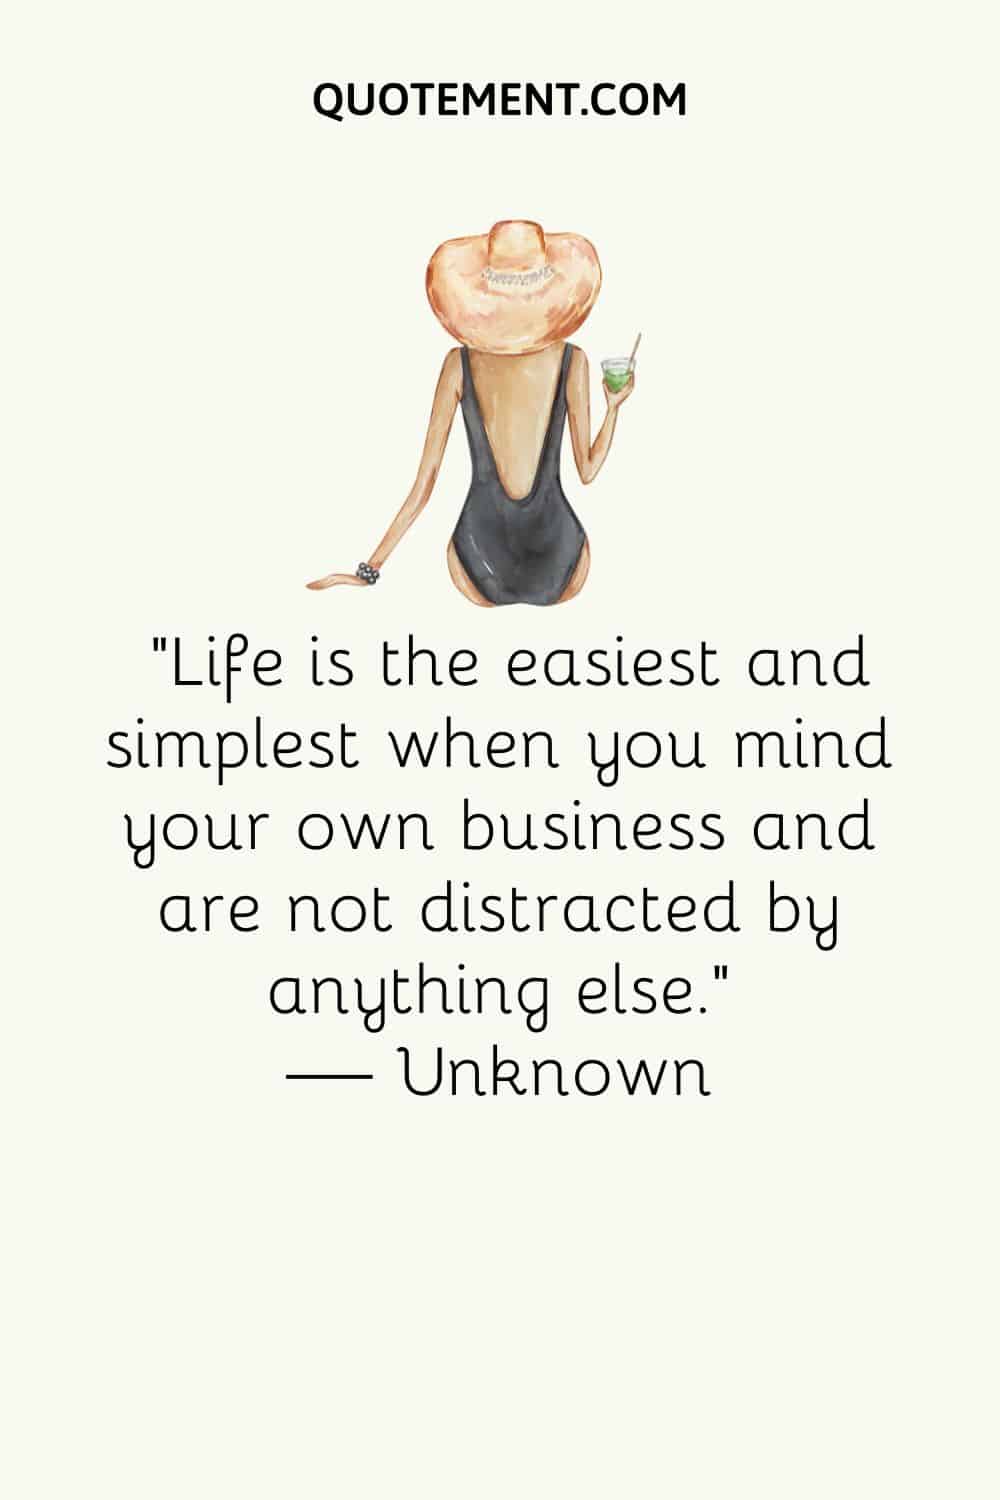 La vida es más fácil y sencilla cuando te ocupas de tus propios asuntos y no te distraes con nada más